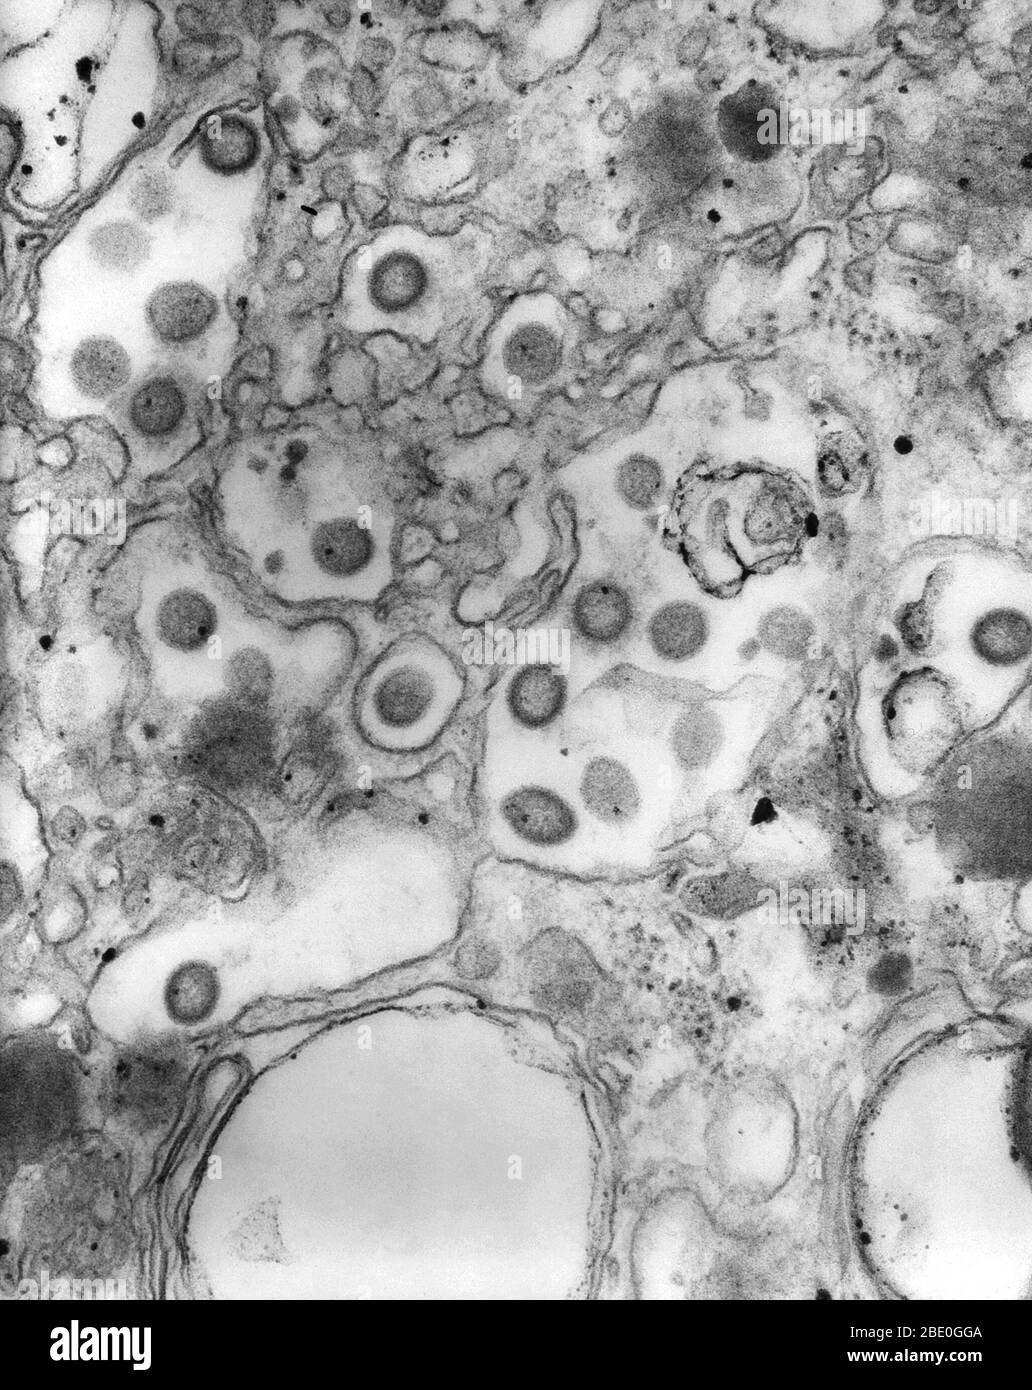 Negativ gefärbte Transmissionselektronenmikrographie (TEM) zahlreicher Ganjam-Virusvirionen in Gewebeproben. Dieses Familienmitglied der Bunyaviridae ist antigenisch, eng verwandt mit dem Nairobi-Schafkrankheitsvirus (NSDV) und eine asiatische Variante. Obwohl nicht ansteckend, Ganjam-Virus ist ein Arbovirus, durch den Biss bestimmter Zecken, einschließlich Hemaphysalis intermedia und Rhipecephalus hämaphysaloides verbreitet. Die größte Virusfamilie, Bunyaviridae, sind negative-sense-Single-strängte RNA-Viren ((-) ssRNA), die durch Kontakt mit infizierten Arthropoden und Nagetieren verbreitet werden. Stockfoto